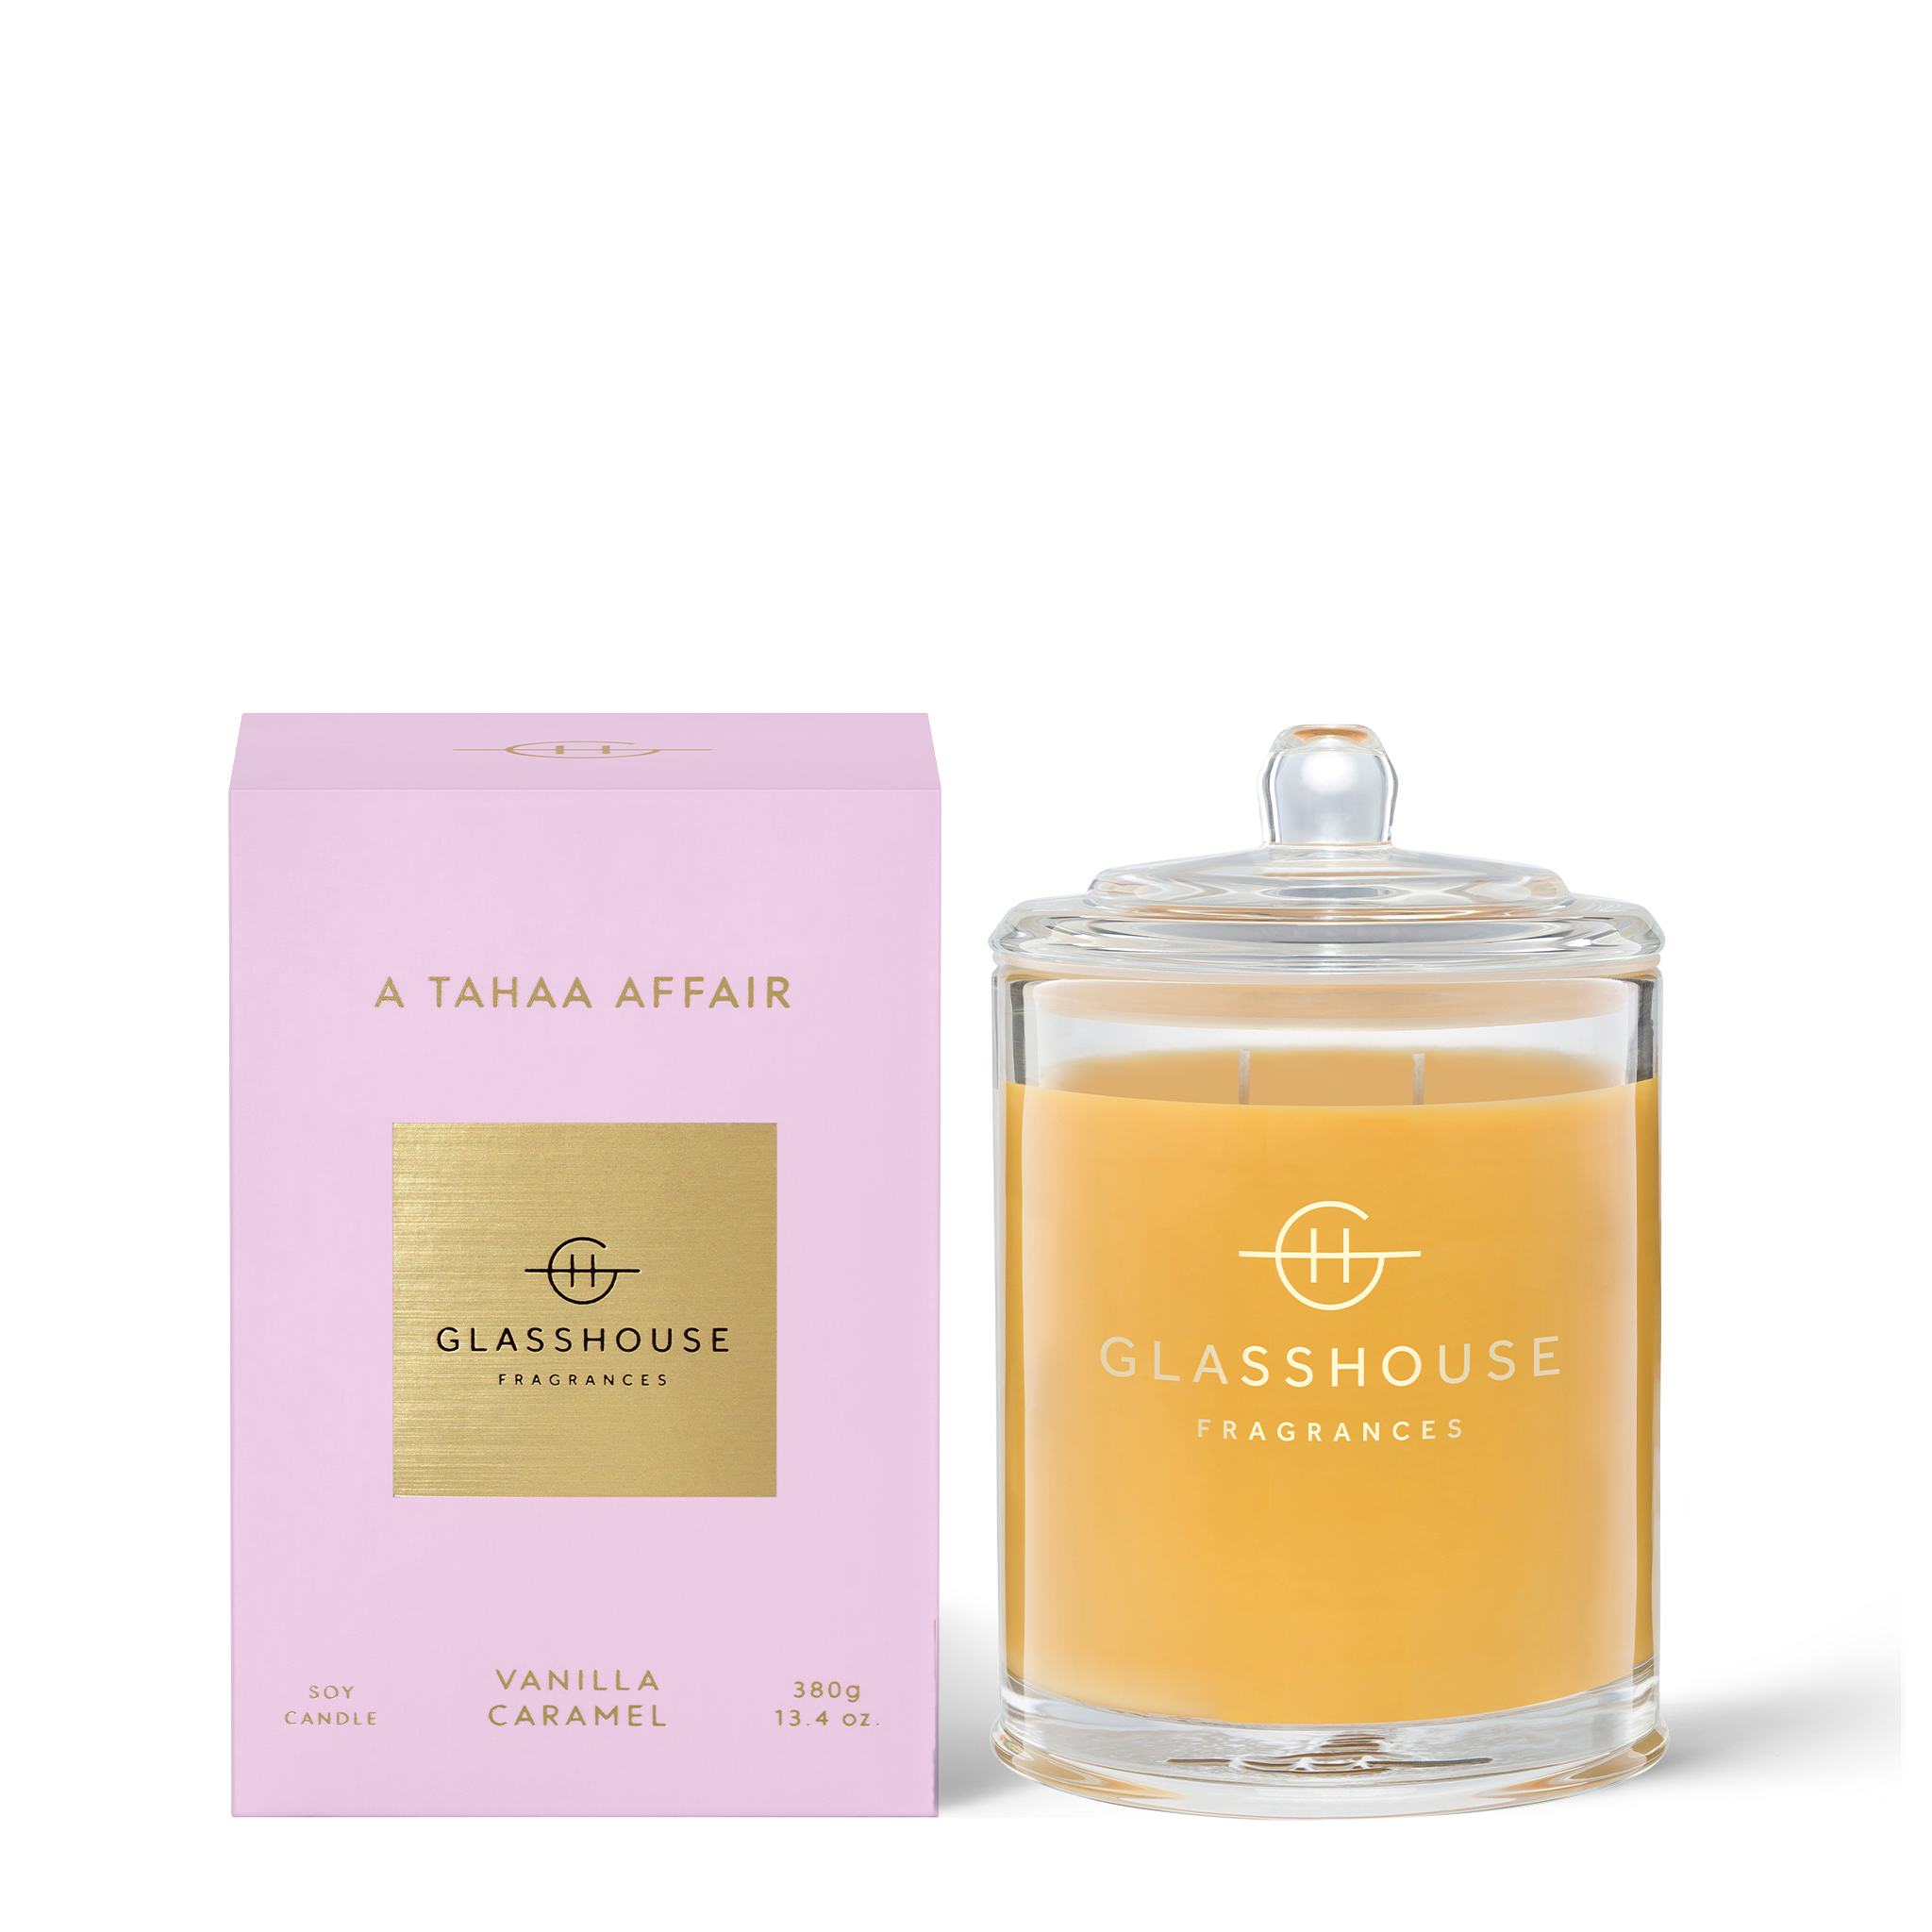 Glasshouse Fragrances 380g Soy Candle - A TAHAA AFFAIR - Vanilla Caramel